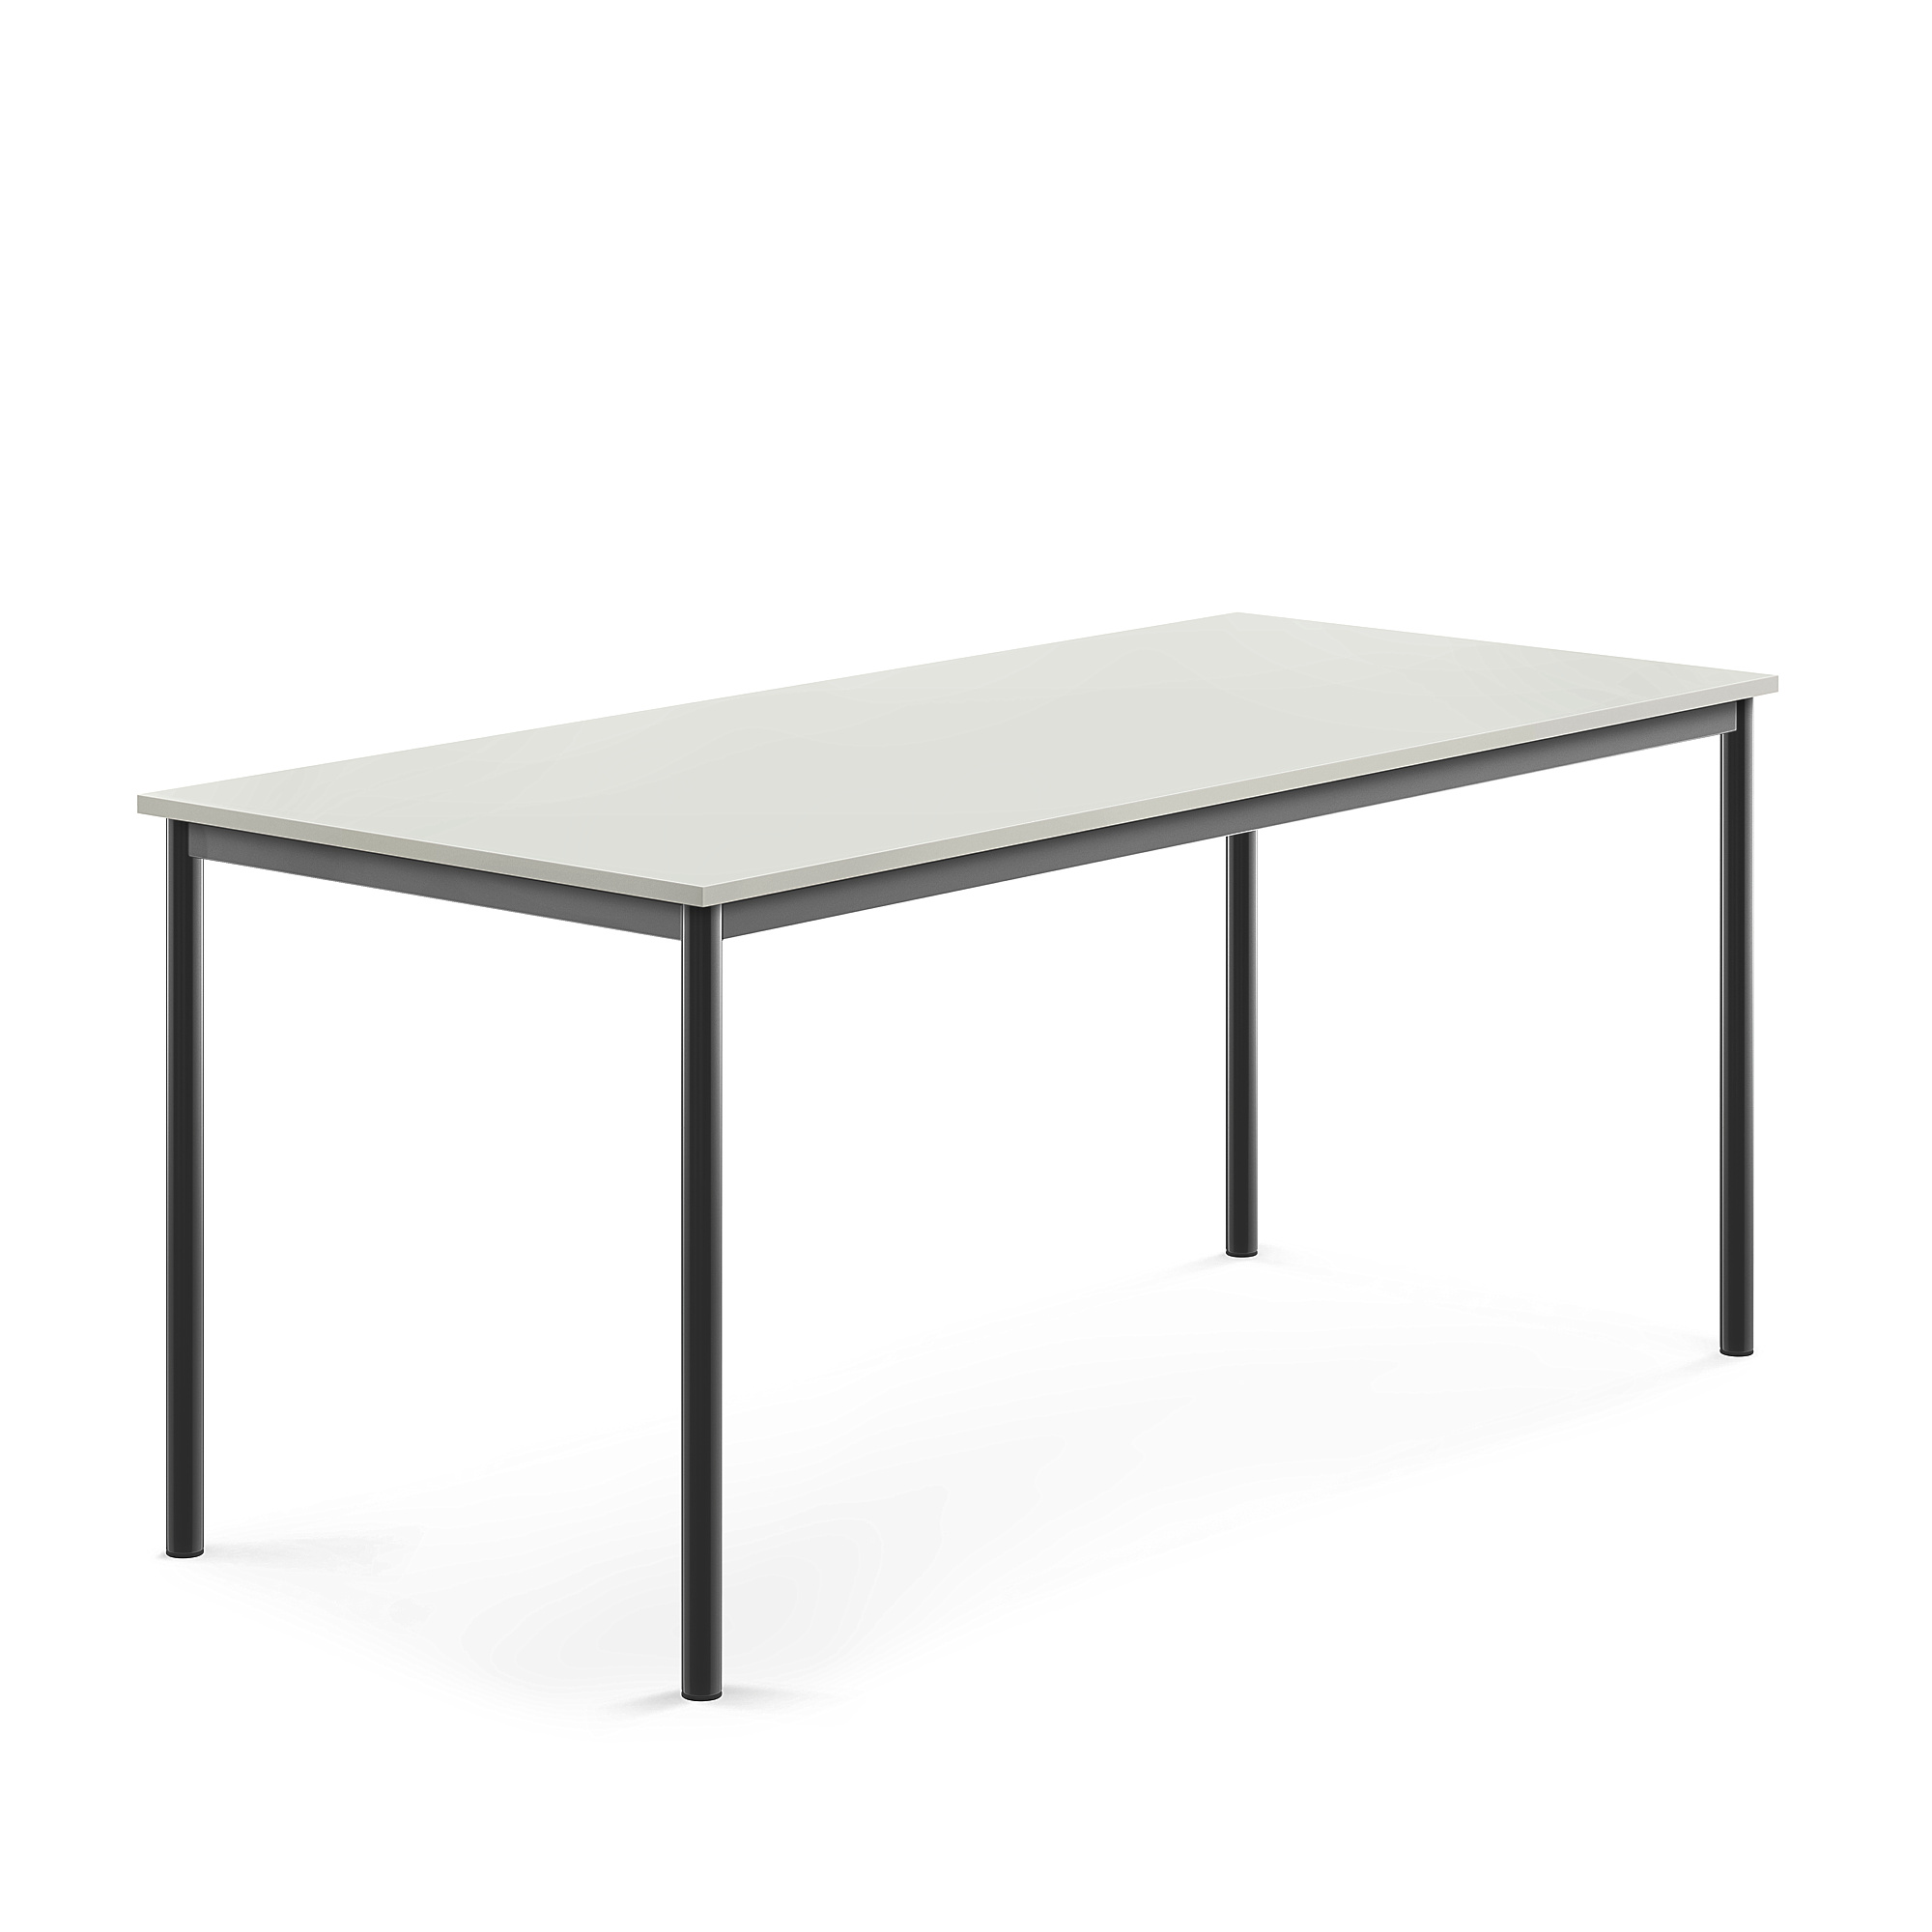 Stůl BORÅS, 1800x800x760 mm, antracitově šedé nohy, HPL deska, šedá